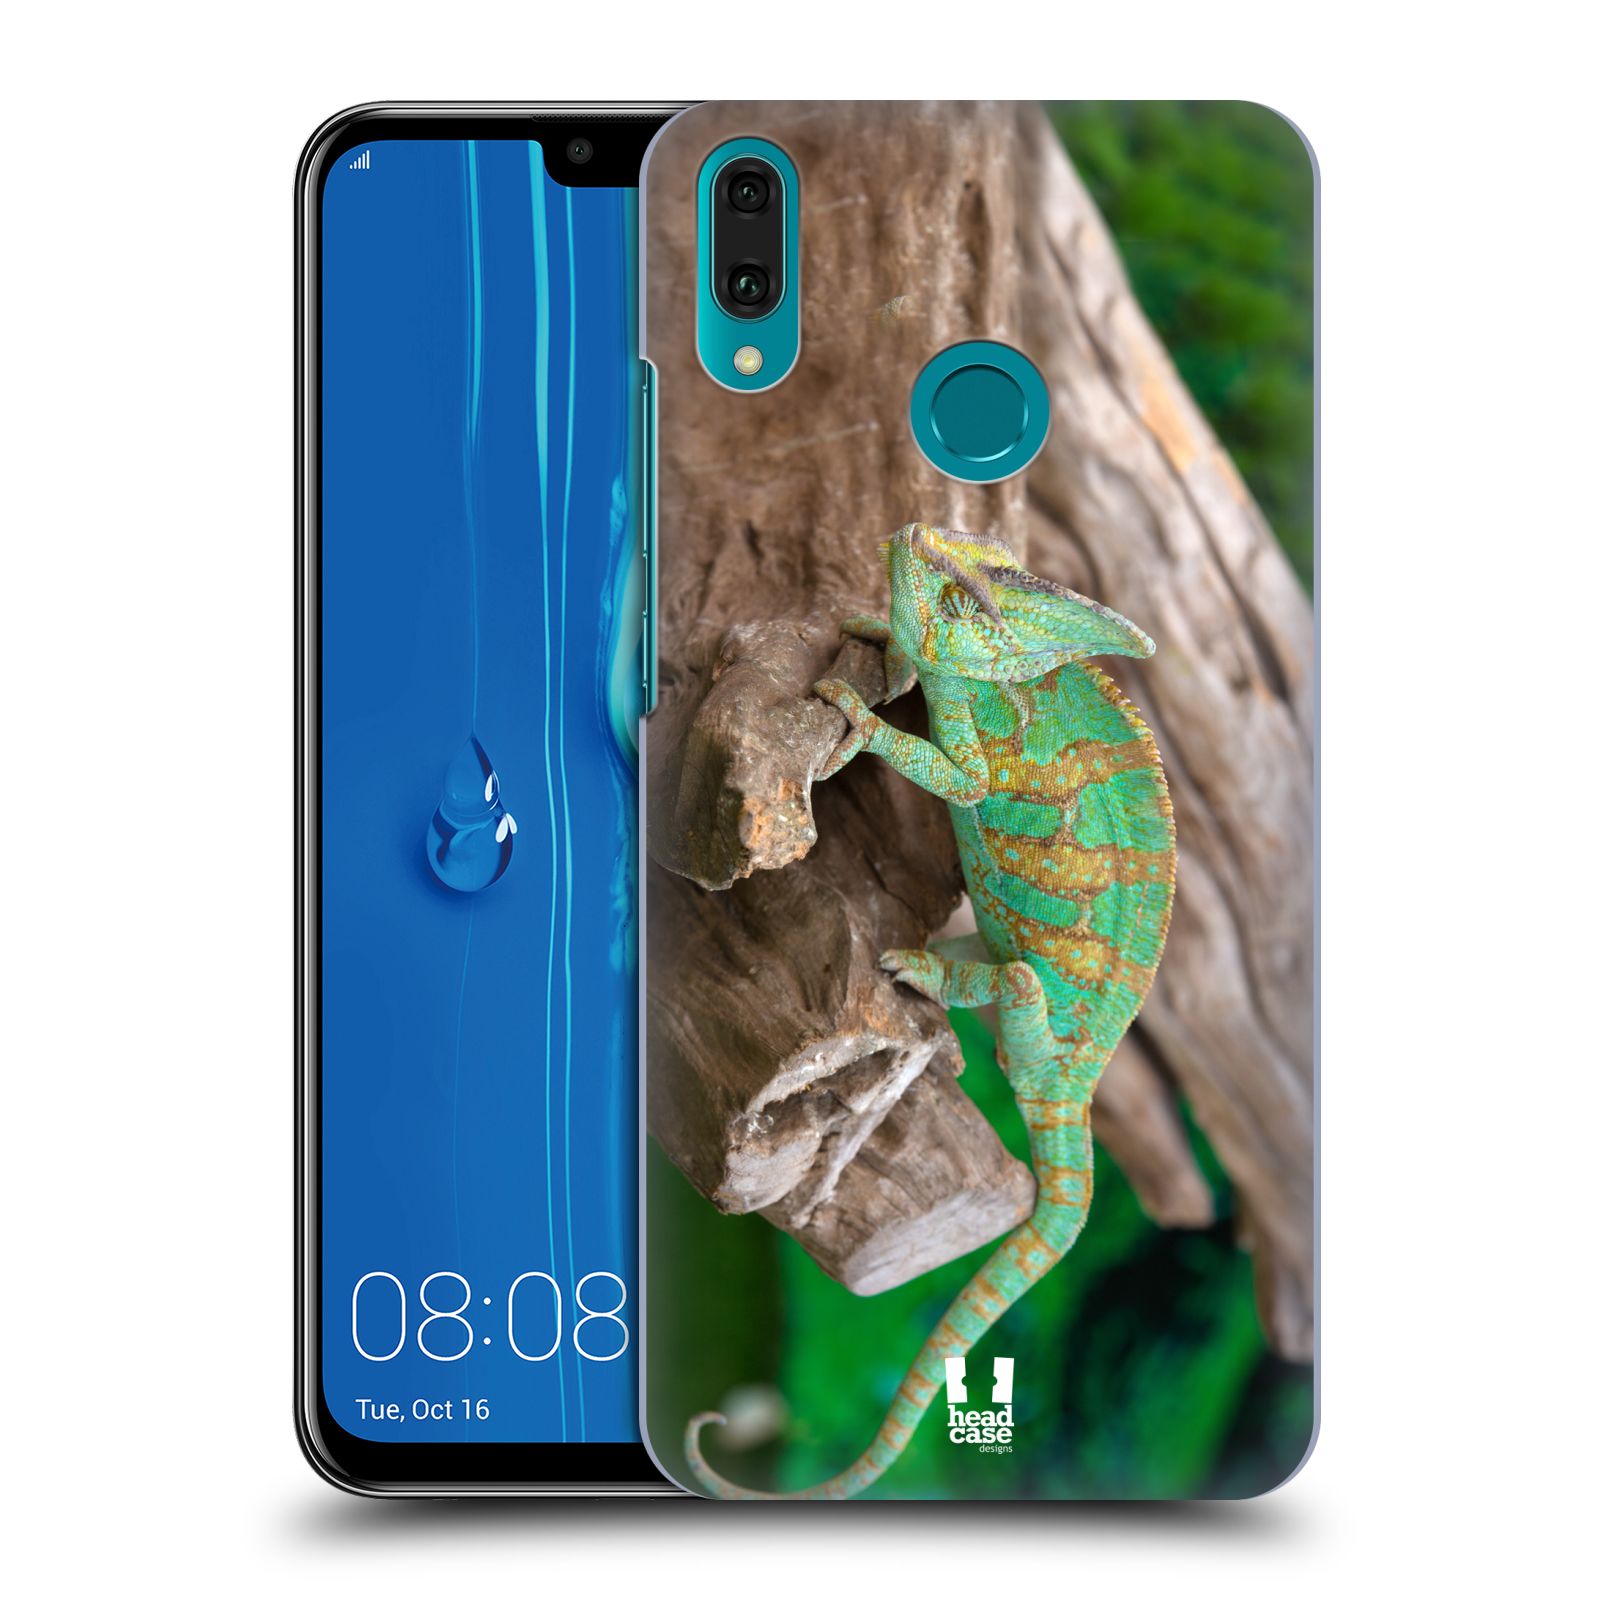 Pouzdro na mobil Huawei Y9 2019 - HEAD CASE - vzor slavná zvířata foto chameleon